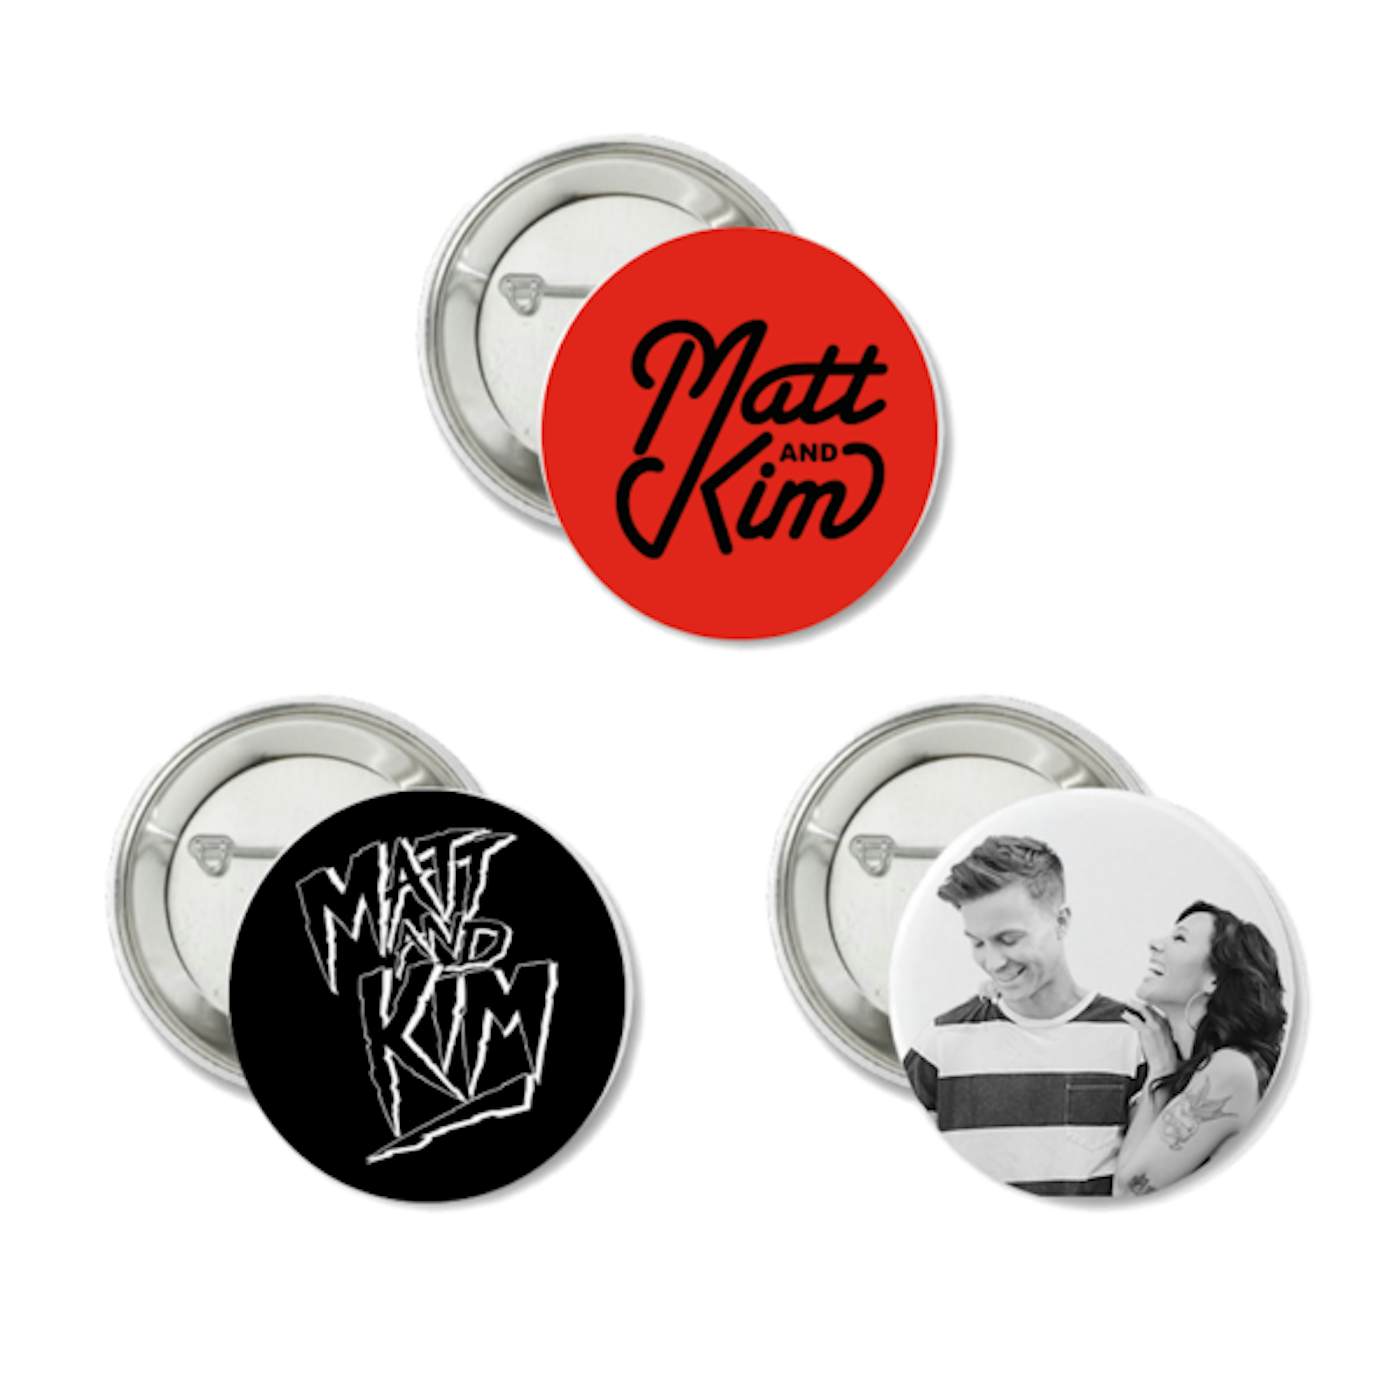 Matt and Kim 3 Button Pack